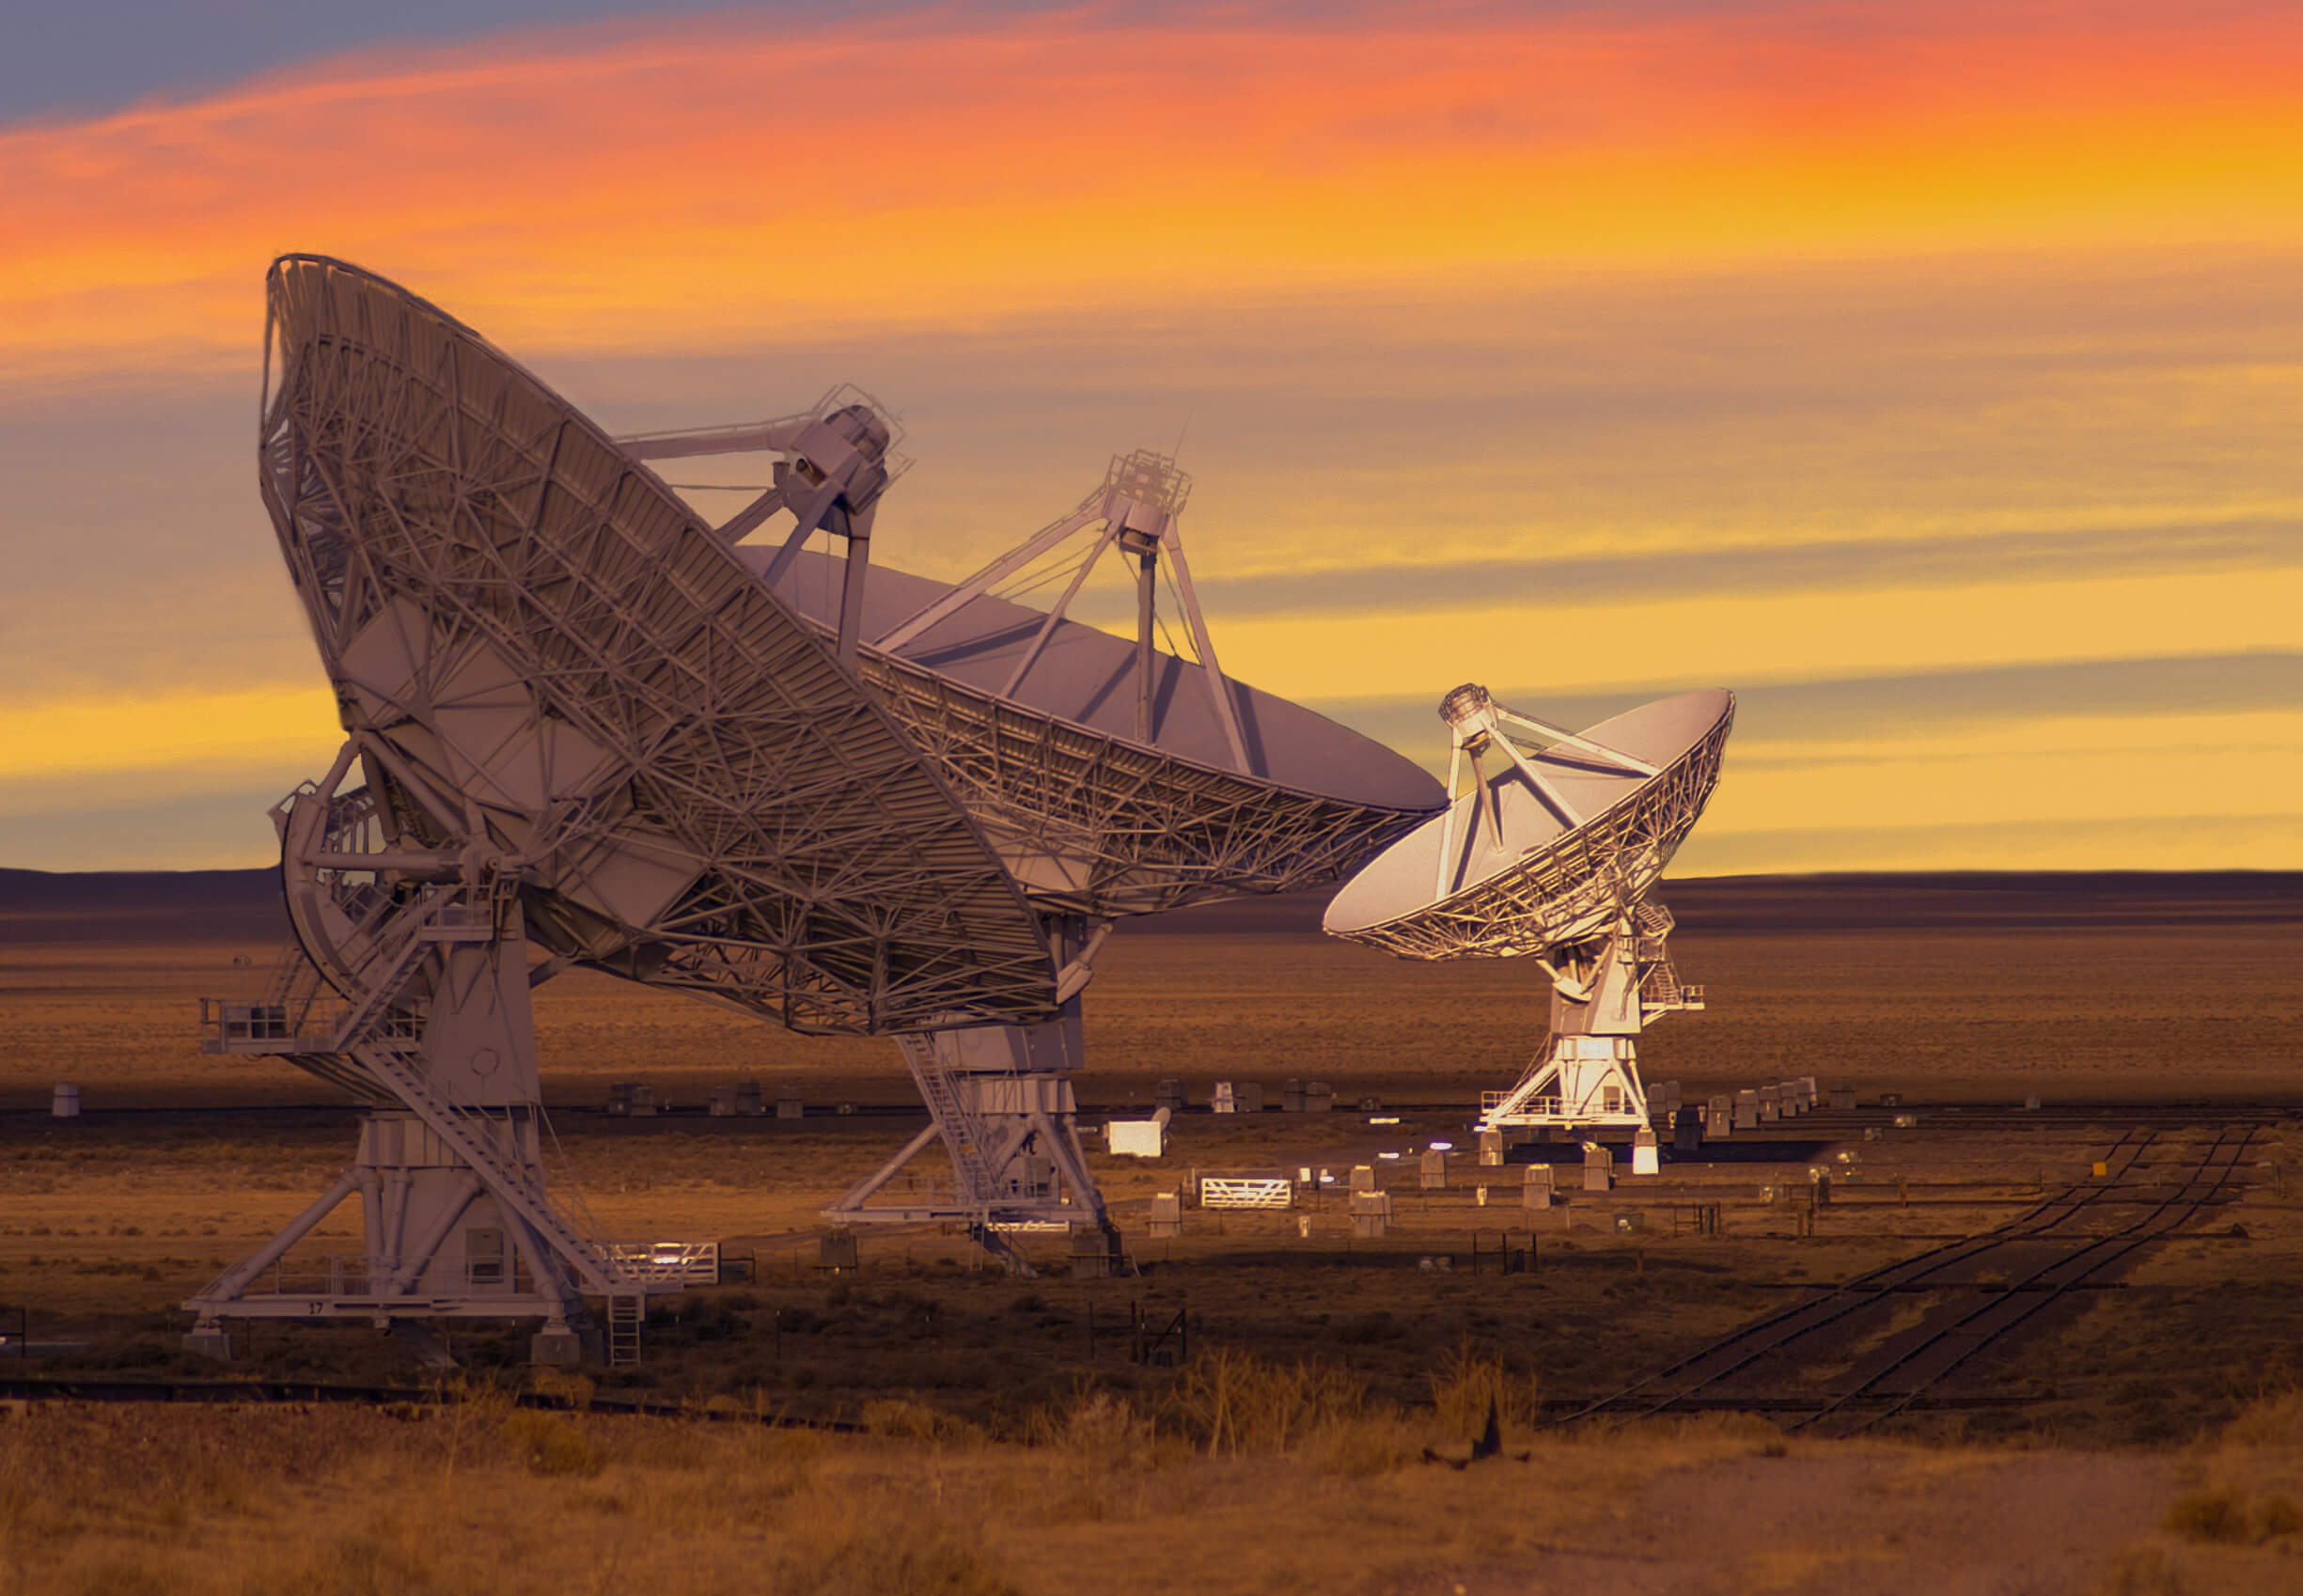 מקטע מתוך המערך הגדול מאוד - ריכוז טלסקופי רדיו המשמשים בין היתר לחיפוש אחר אותות רדיו מחייזרים. צילום: shutterstock